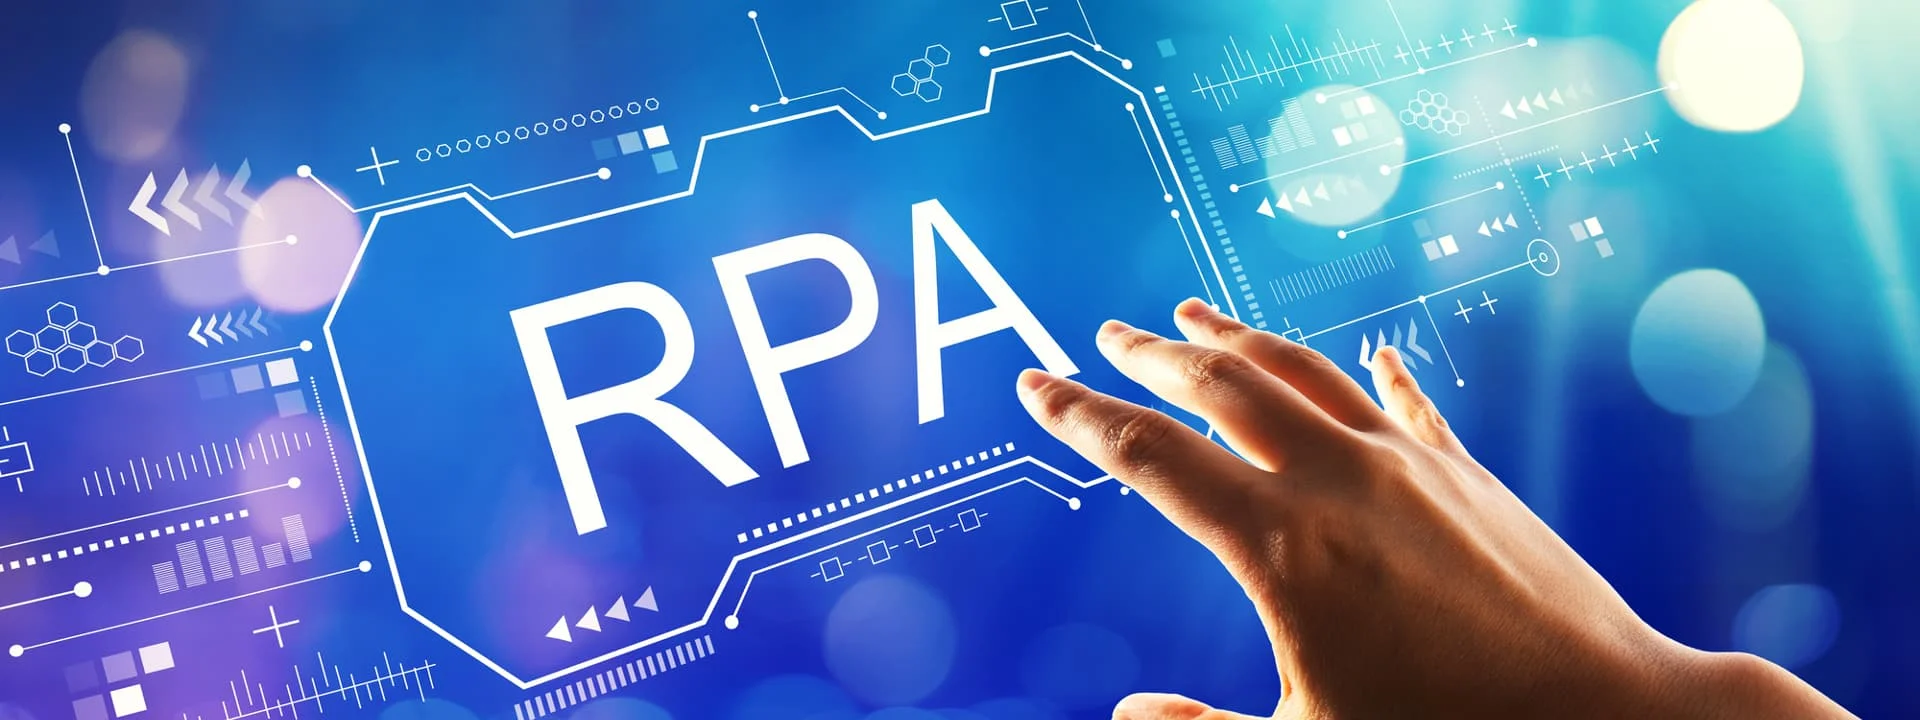 株式会社クエストの生命保険会社へRPA導入支援事例トップ